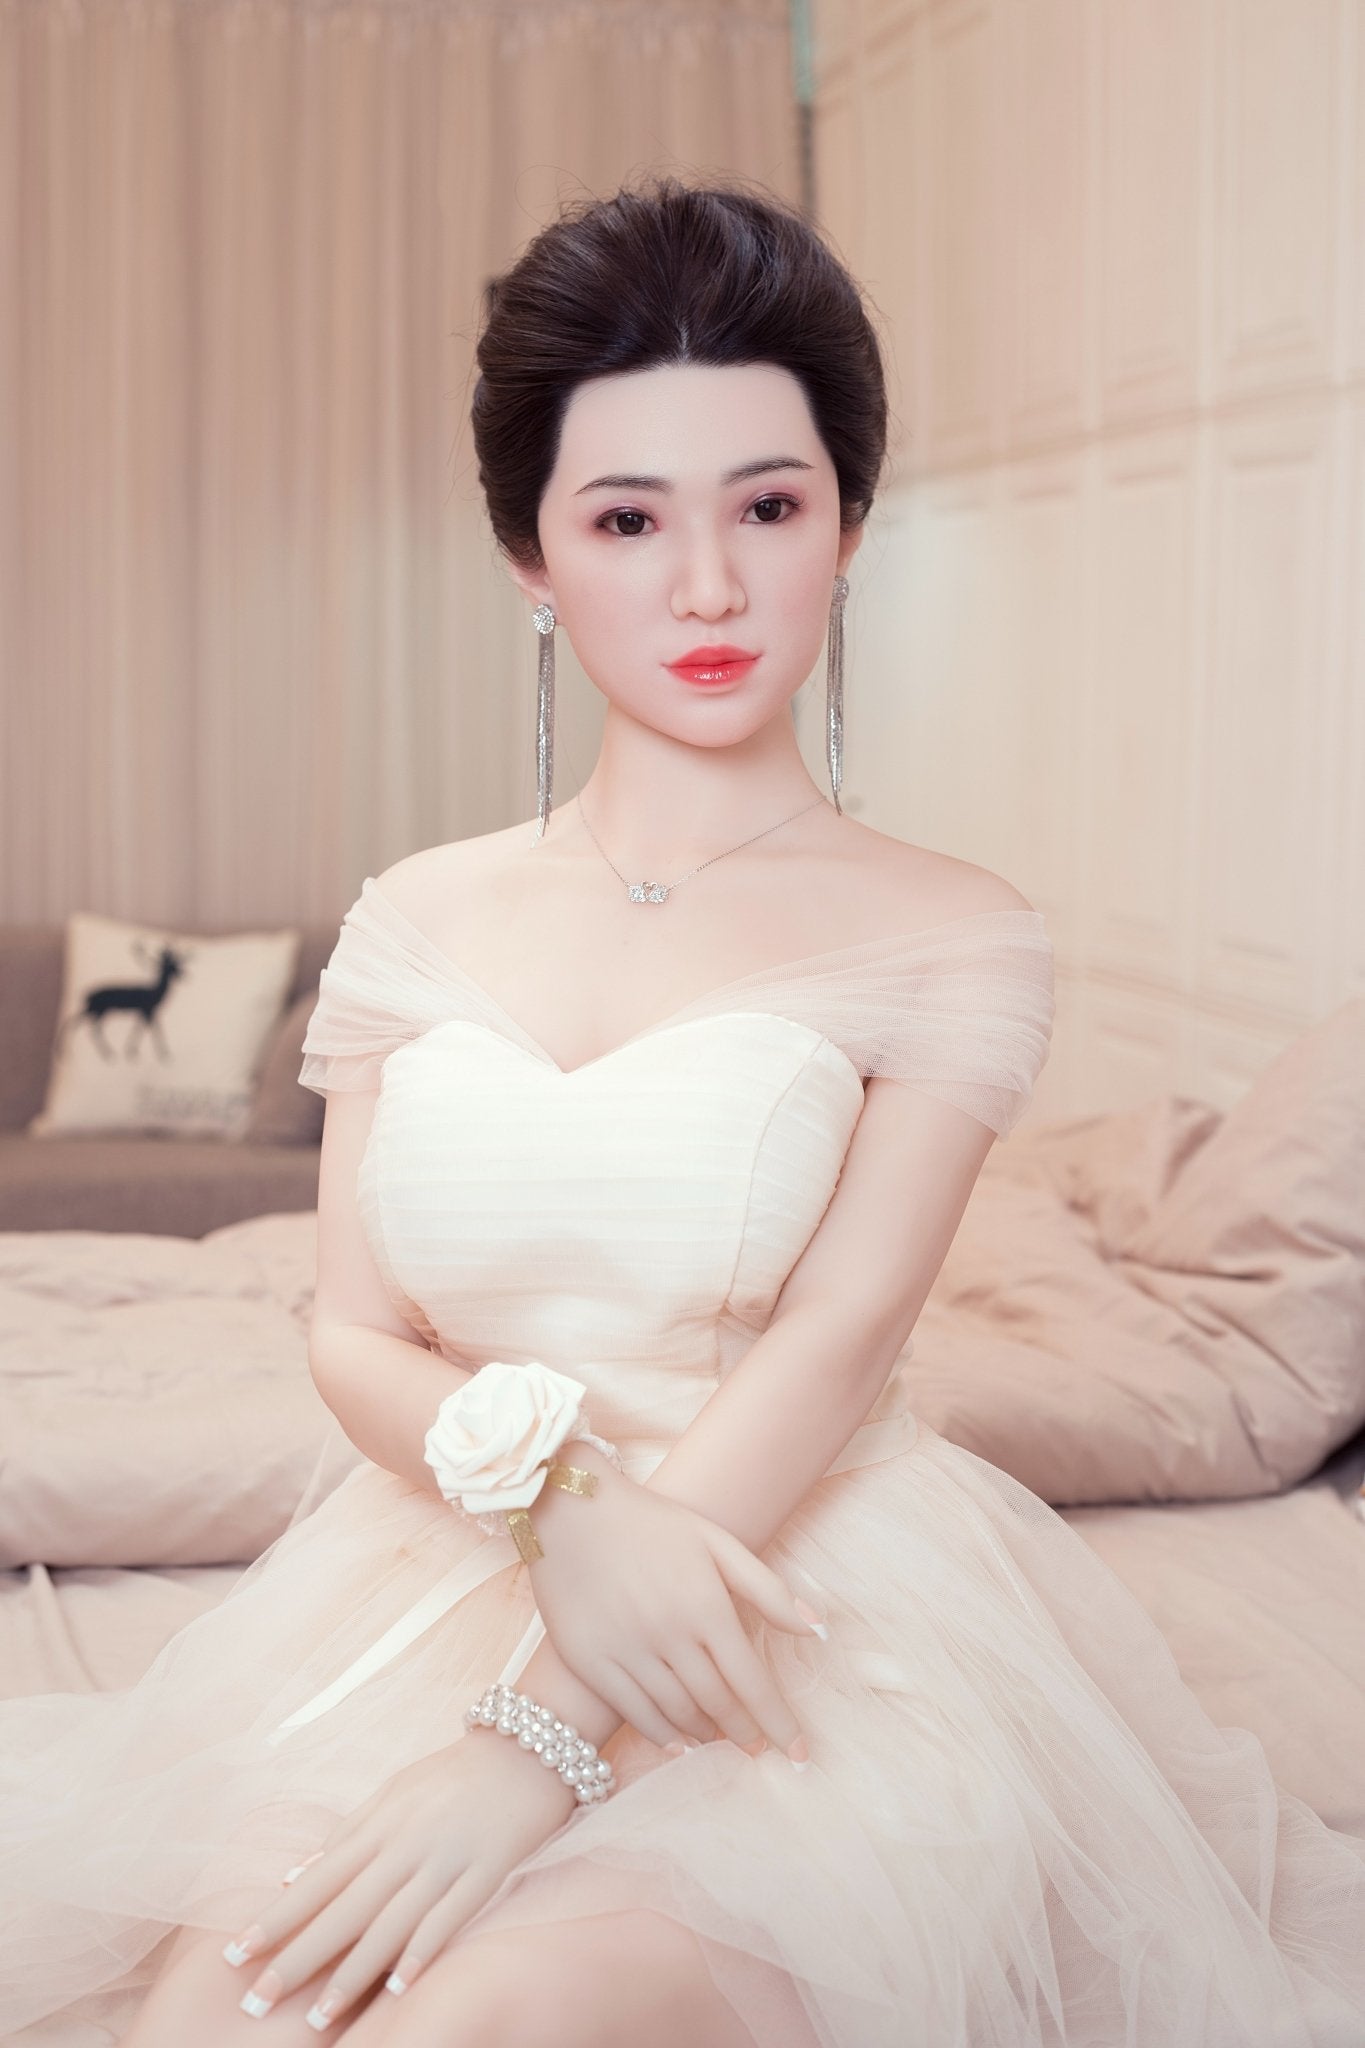 AF 160cm Asian silicone head + hair transplant big breast sexy sex